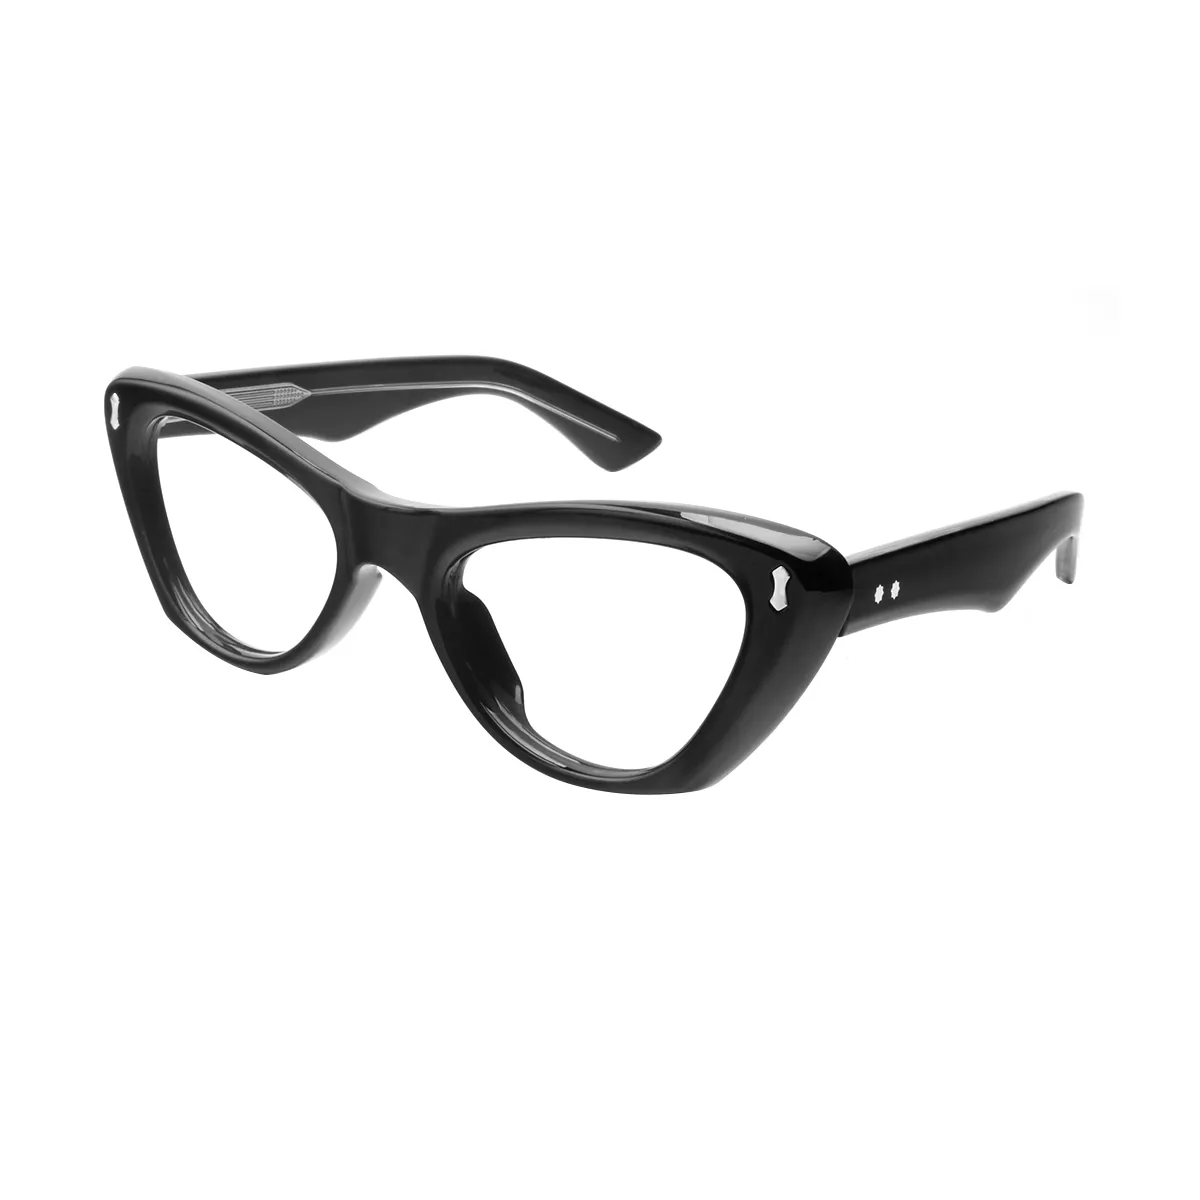 Fashion Cat-eye White Eyeglasses for Women & Men